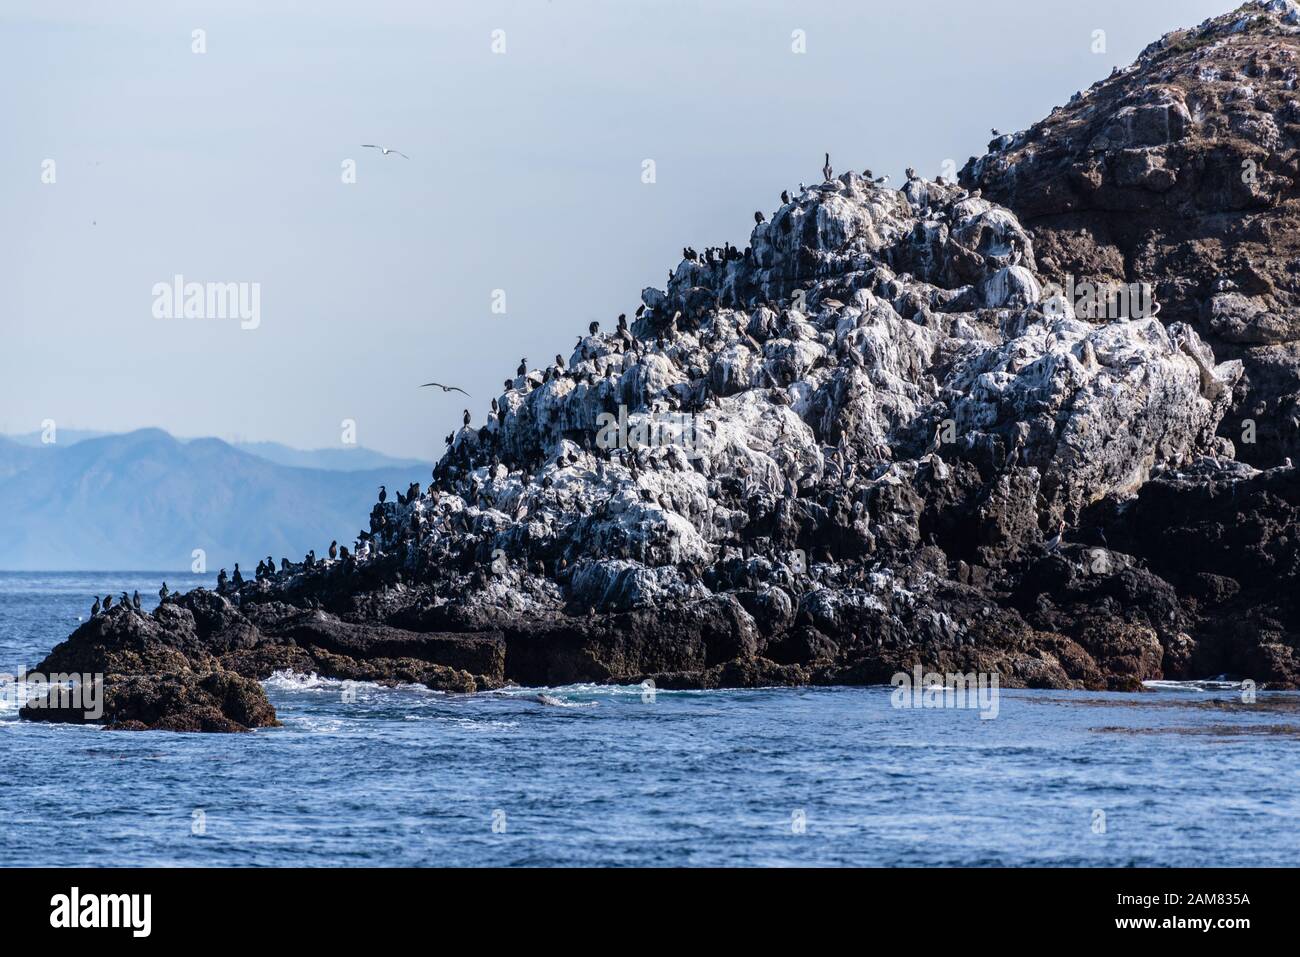 La Isla Anacapa, frente a la costa del sur de California, tiene una gran población de aves grandes Cormorantes que se ciñen a la roca volcánica en el extremo occidental del isl Foto de stock